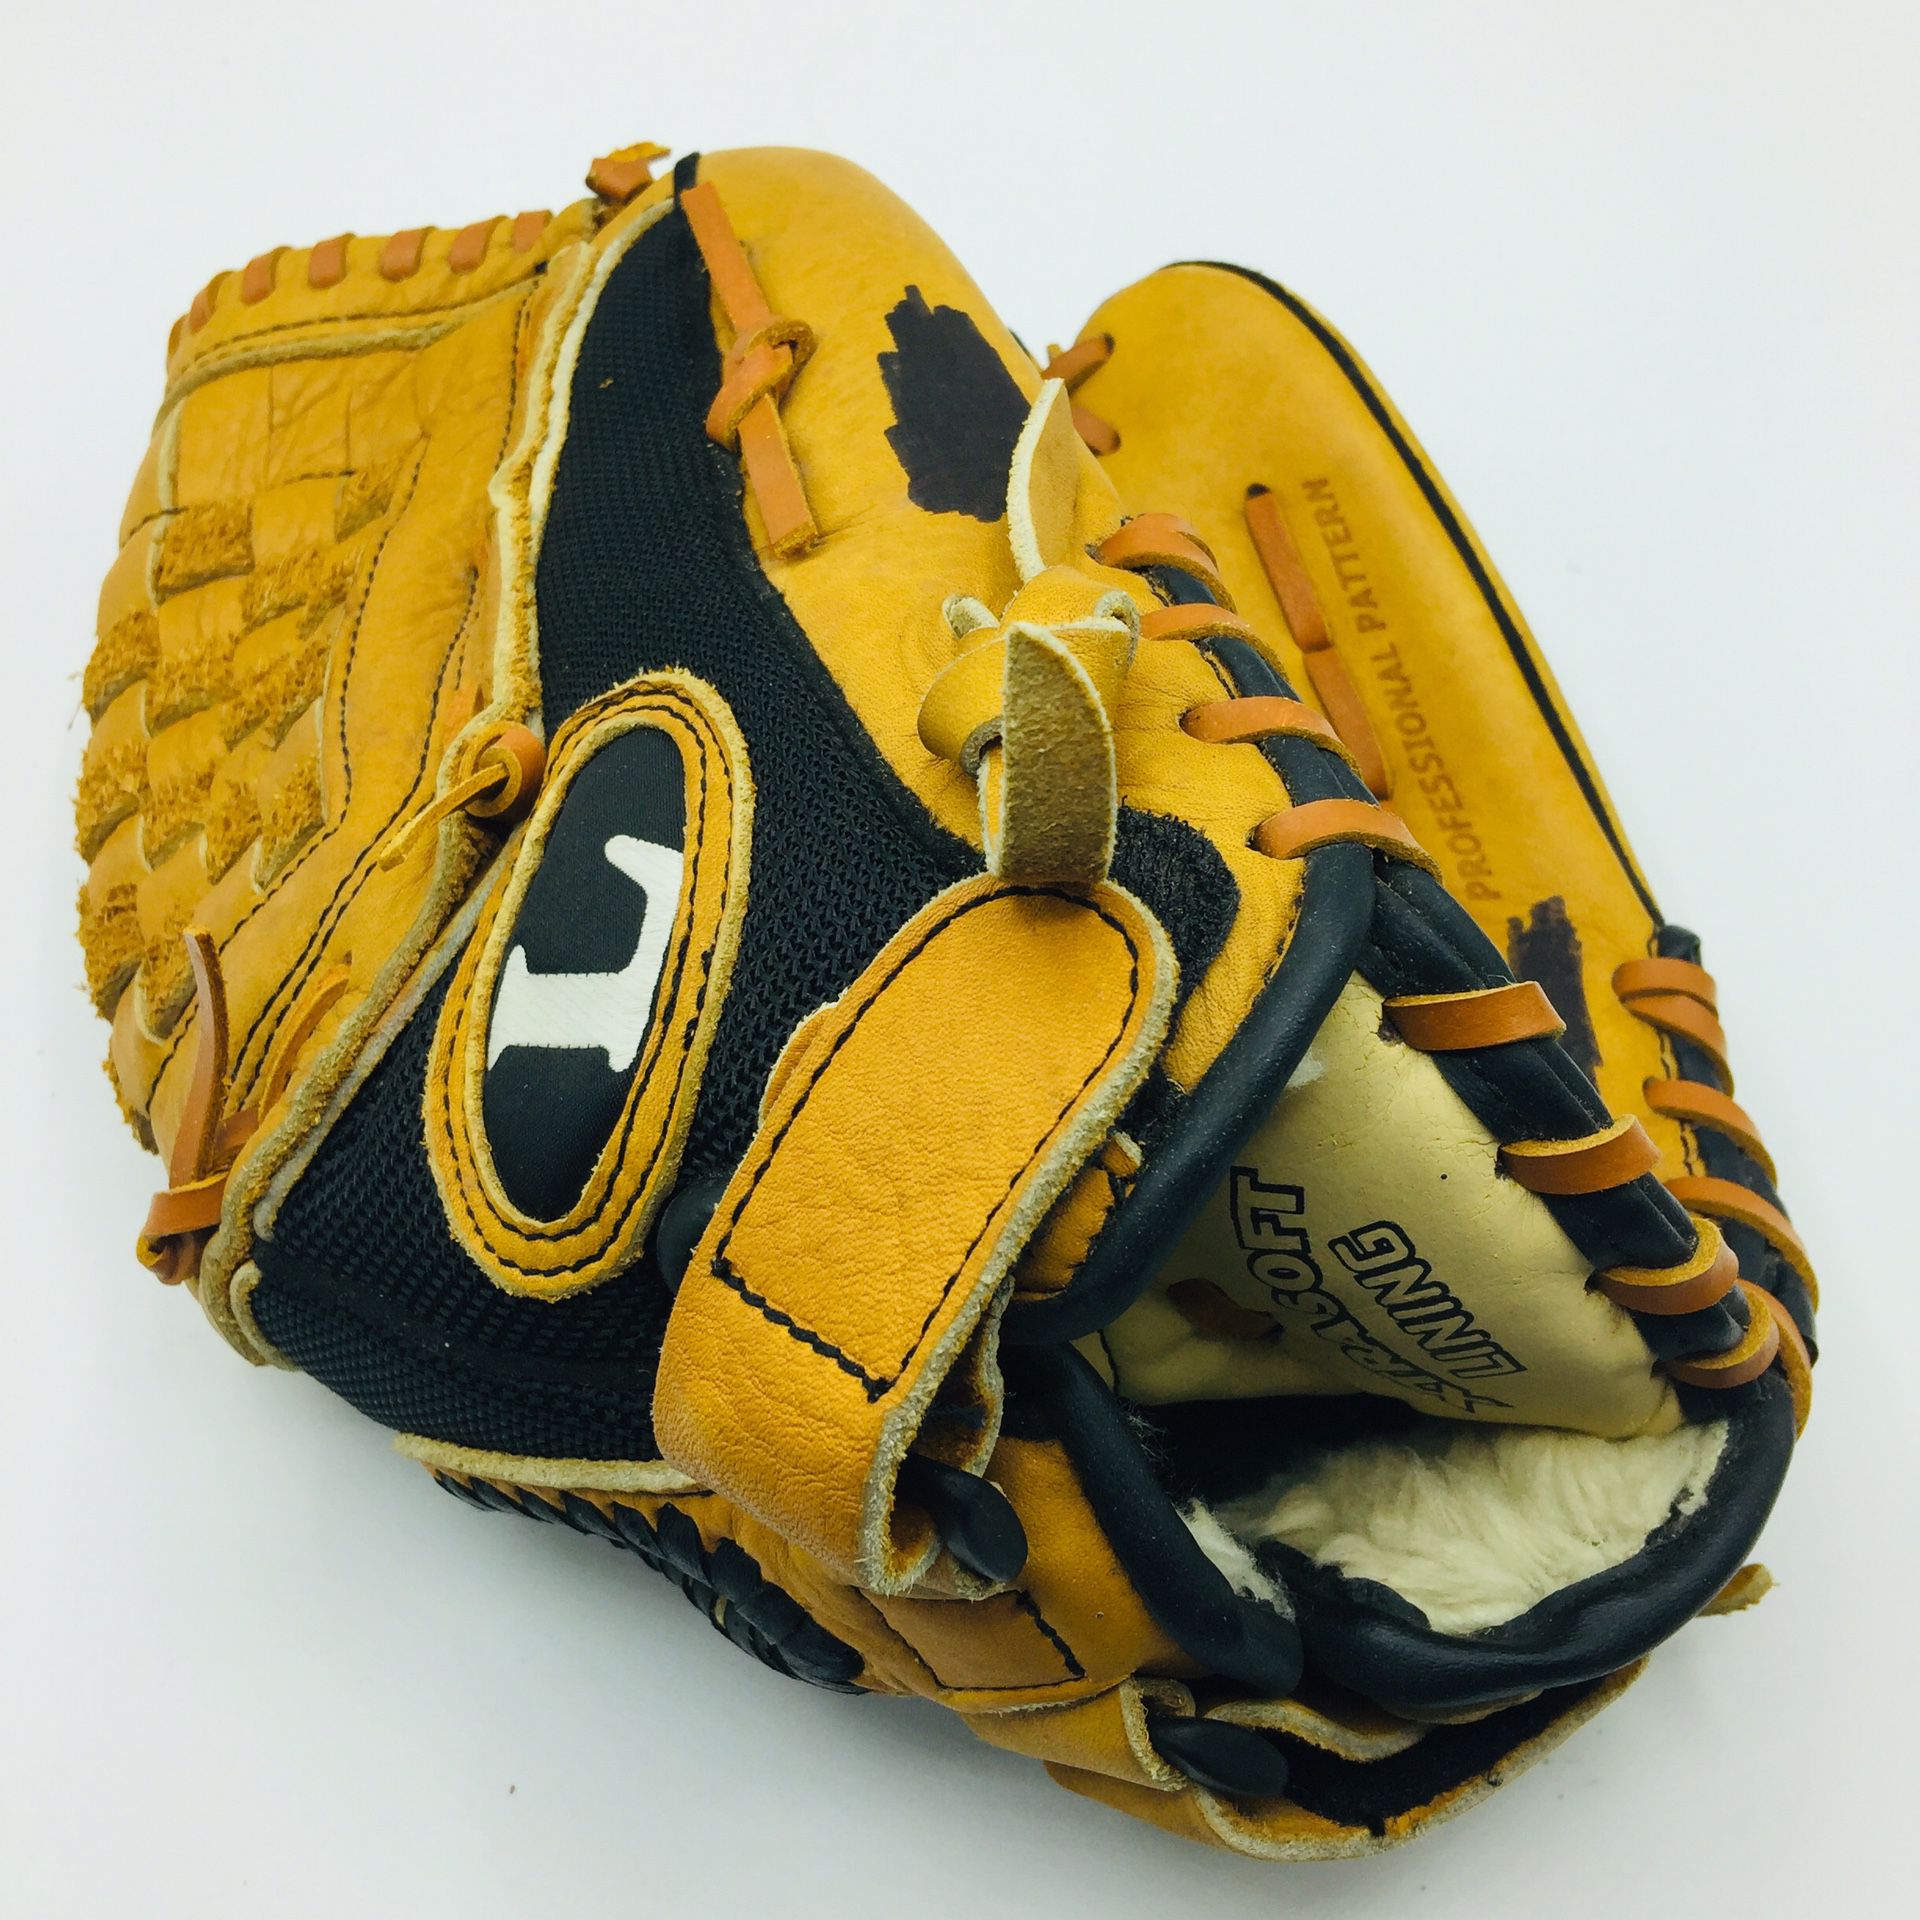 Baseball Glove Louisville Slugger W125 12.5 inch